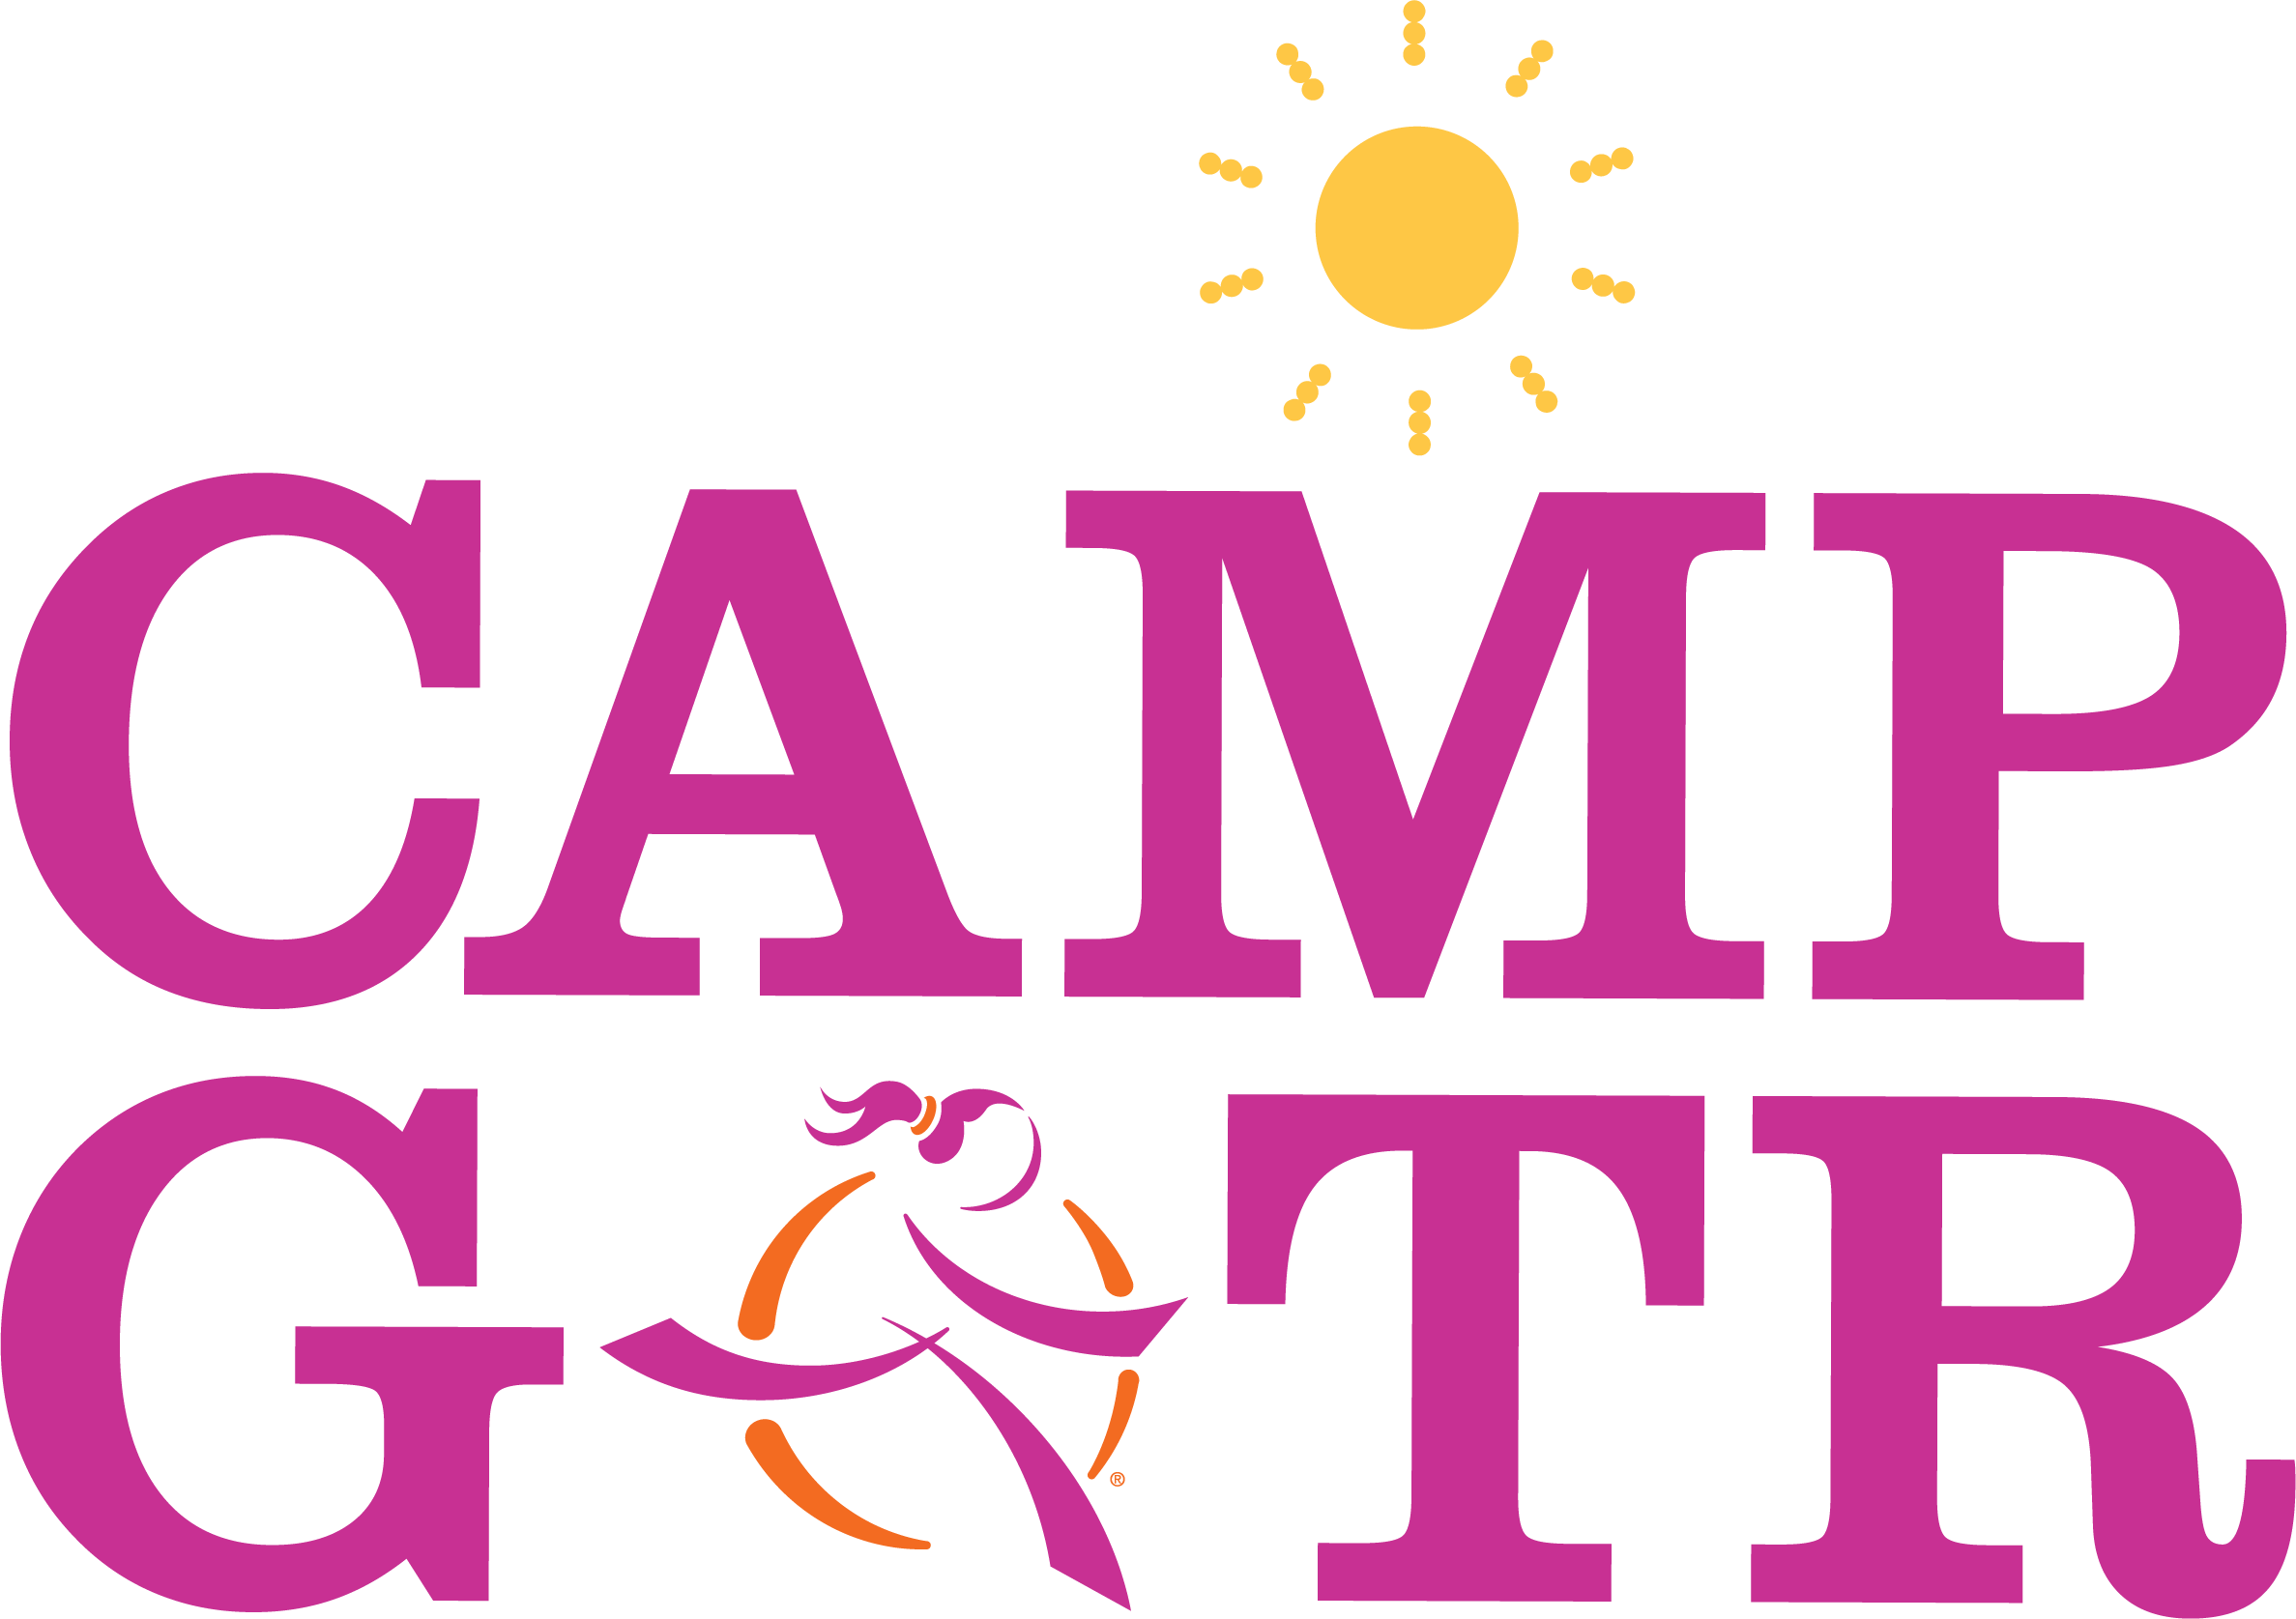 Camp GOTR Logo